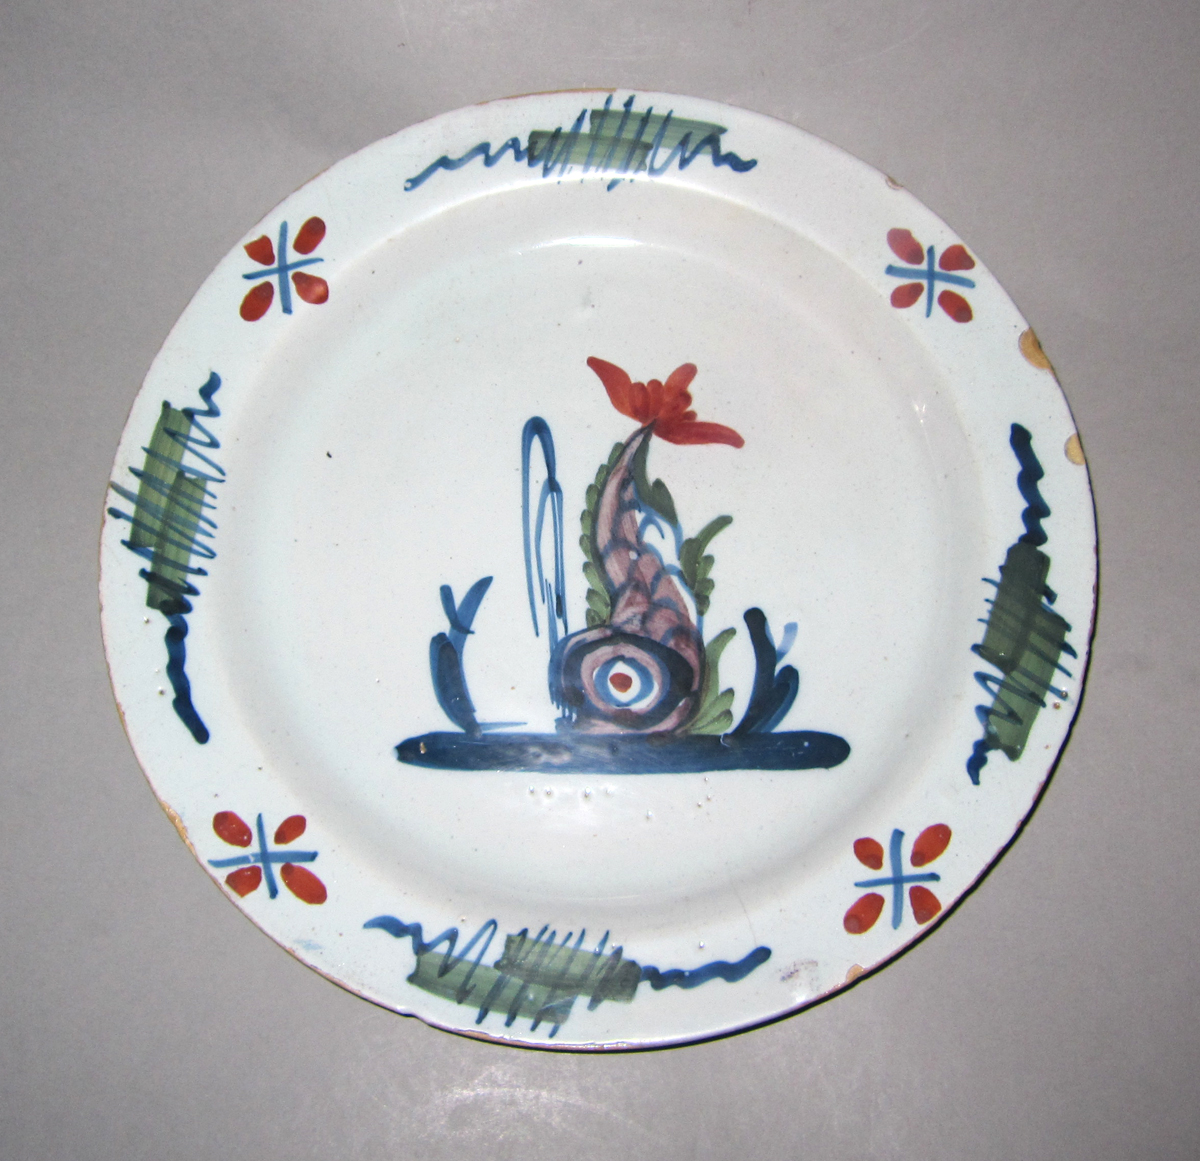 2003.0022.073 Delft plate